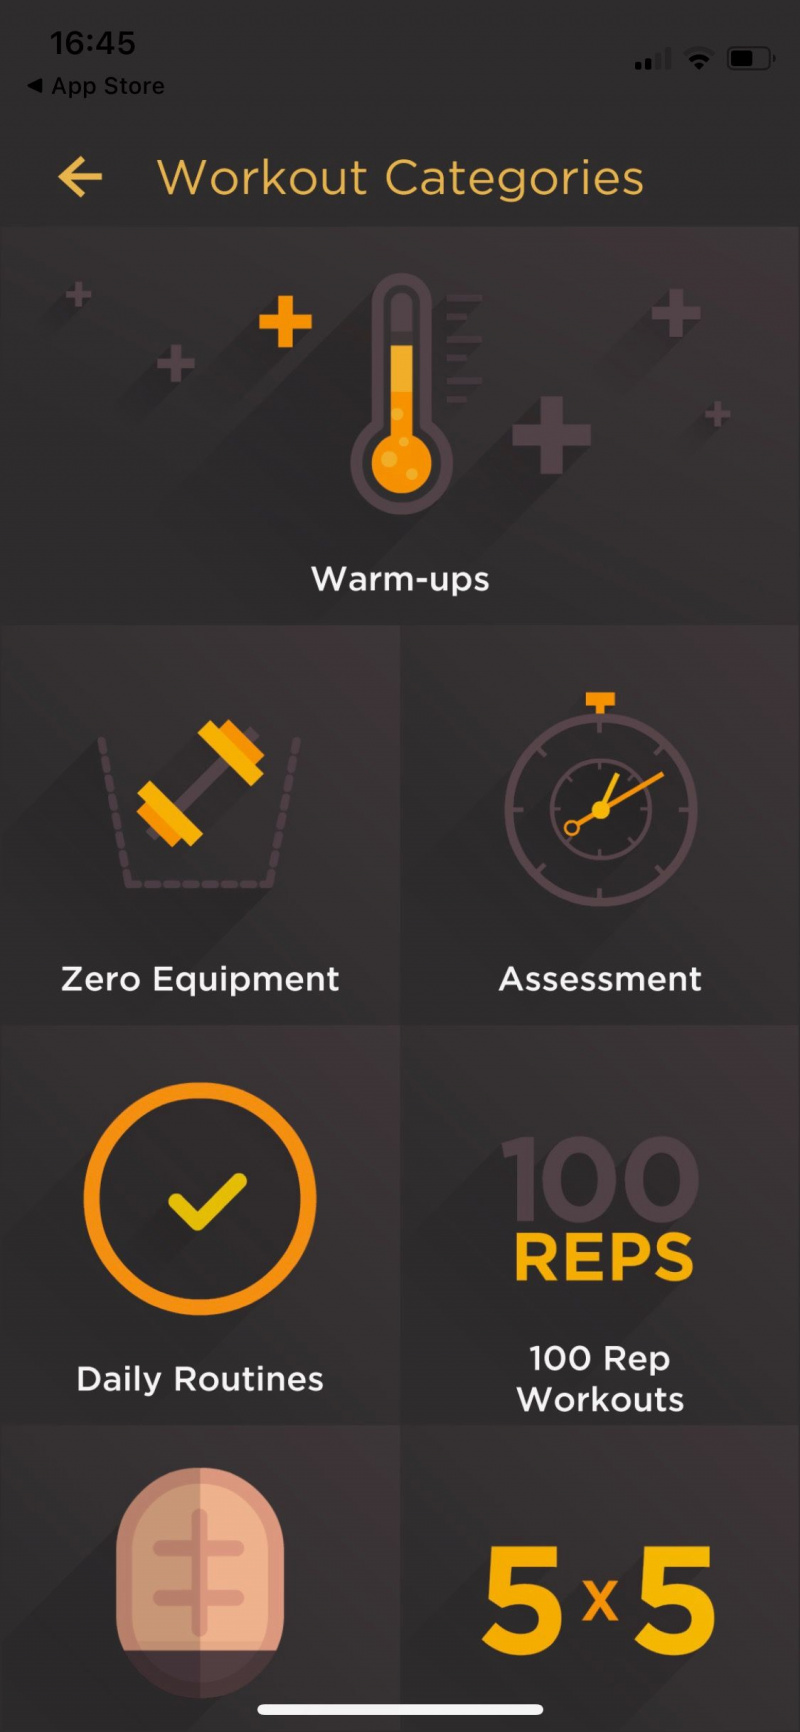   Captura de pantalla de l'aplicació Al Kavado que mostra les categories d'entrenament